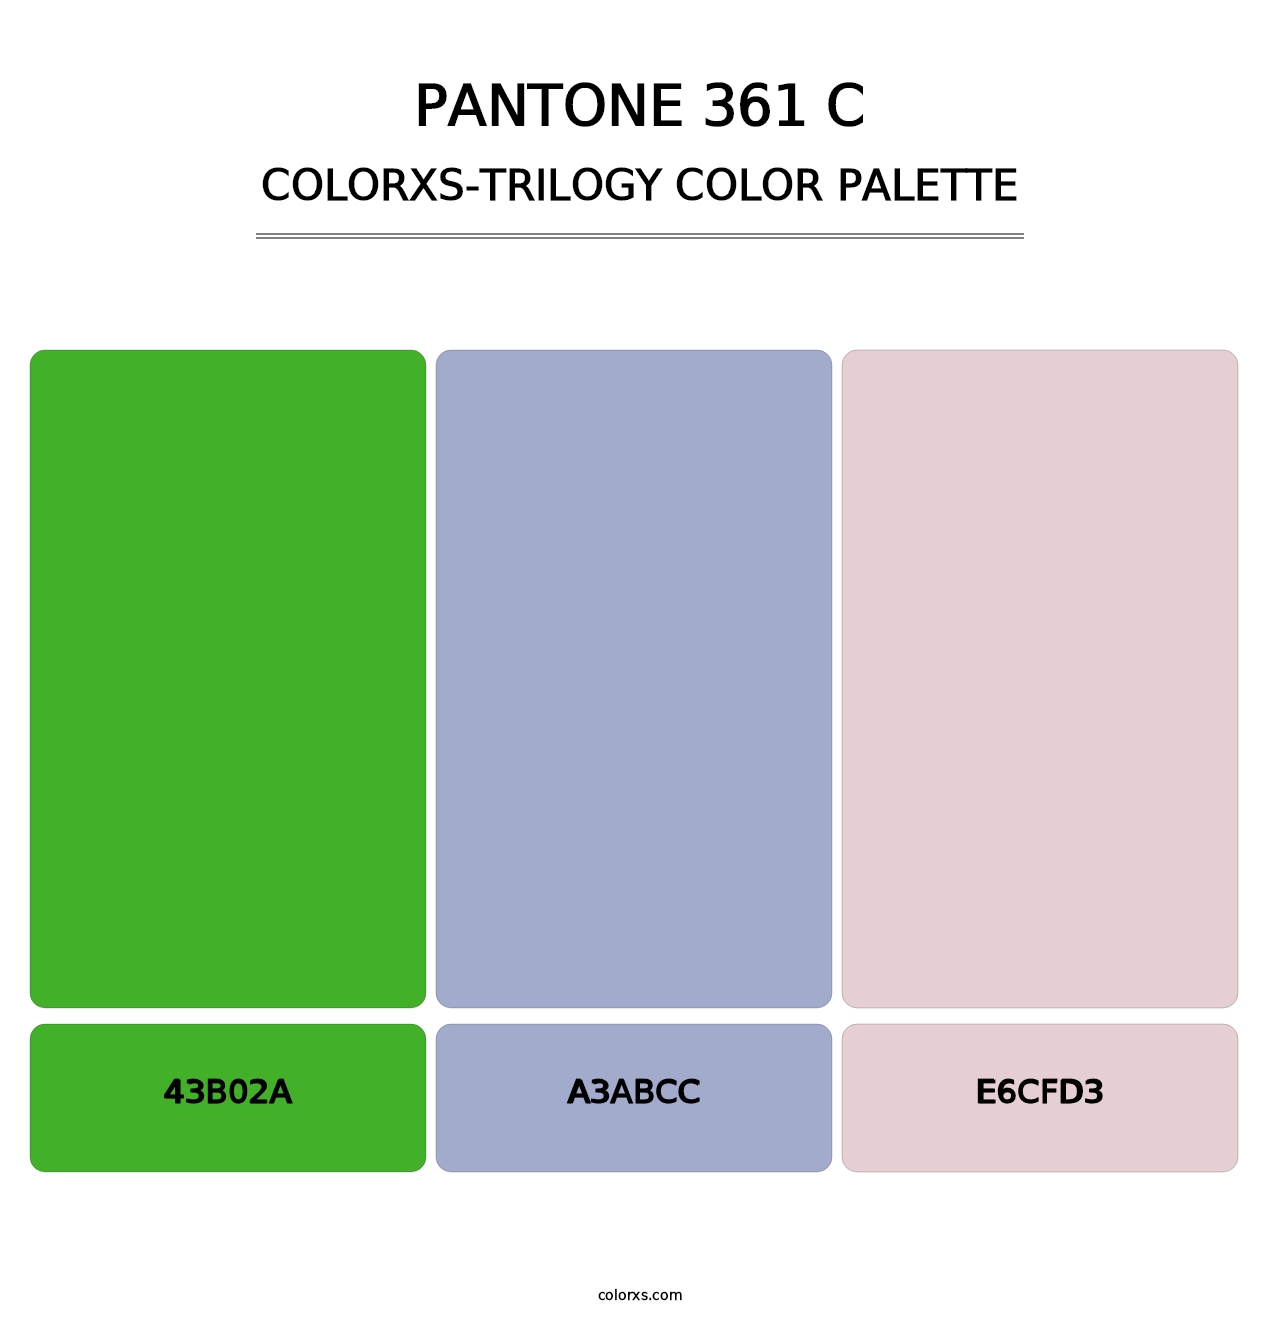 PANTONE 361 C - Colorxs Trilogy Palette